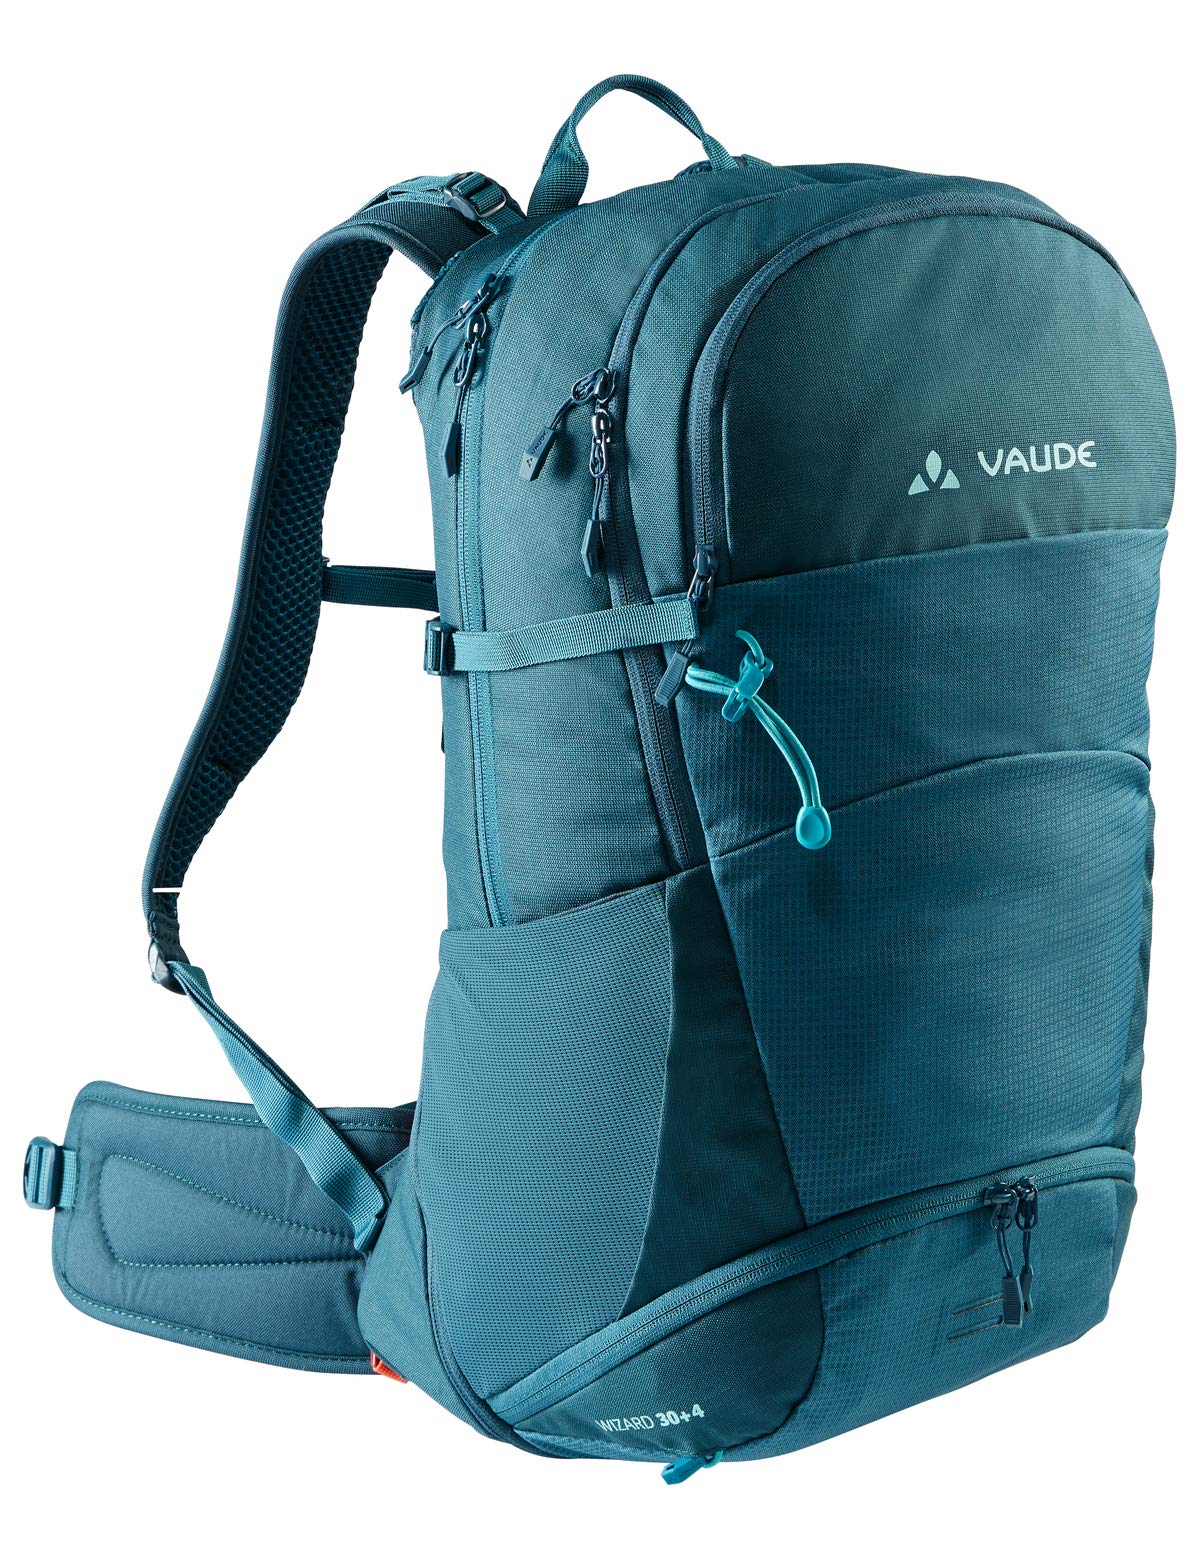 VAUDE Wizard 30+4 (34L) Rucksack zum Wandern mit Regenschutz